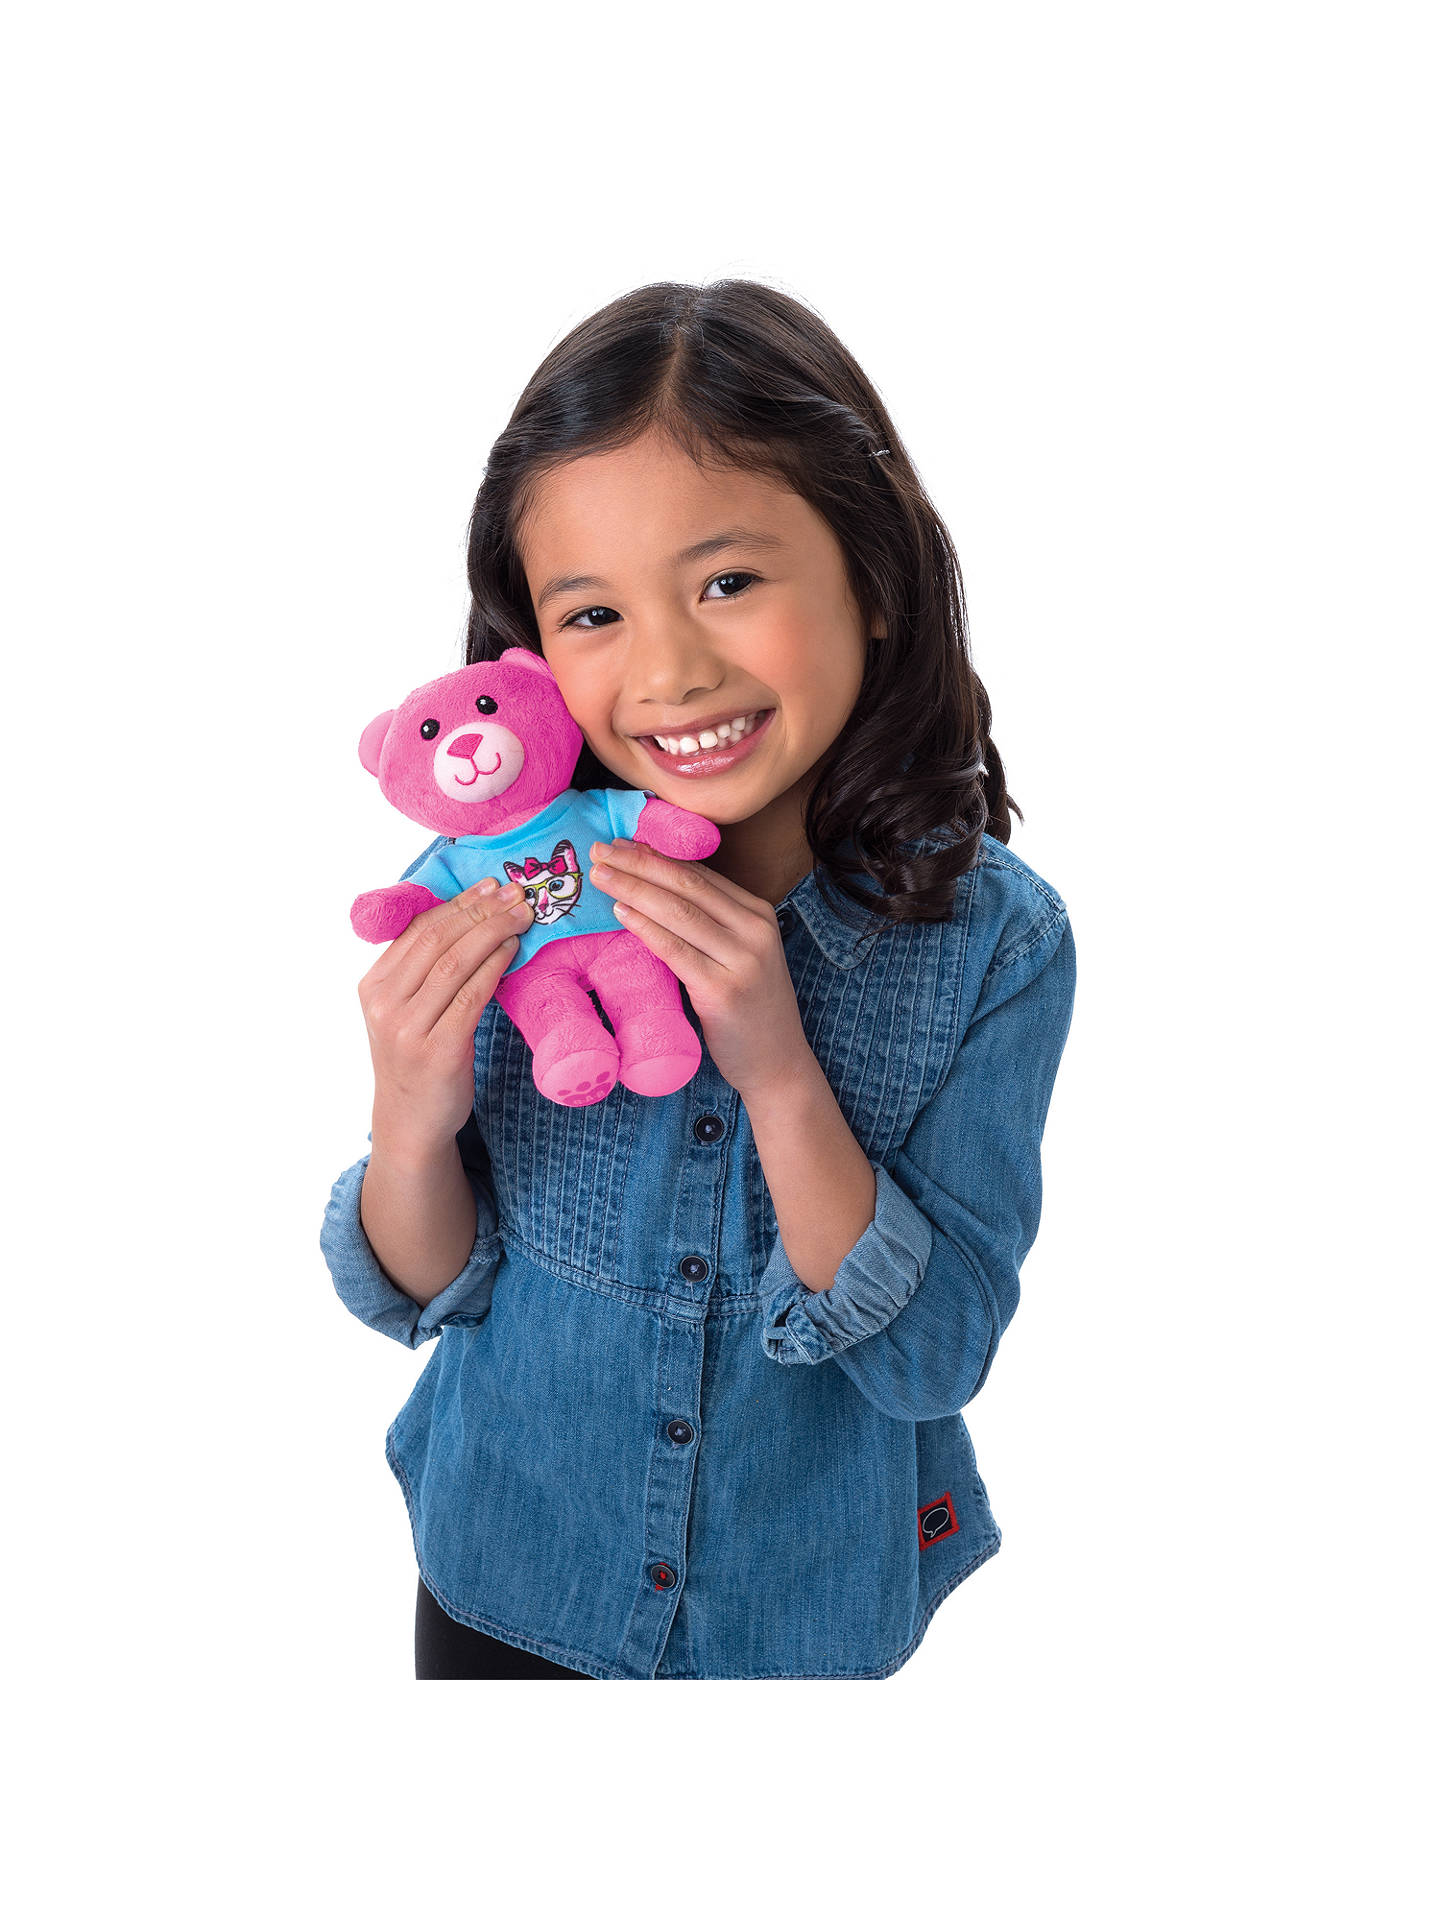 Игрушки год и восемь. Build-a-Bear студия мягкой игрушки. Популярные игрушки для детей. Игрушки для девочек 6 лет. Самые популярные игрушки для девочек.